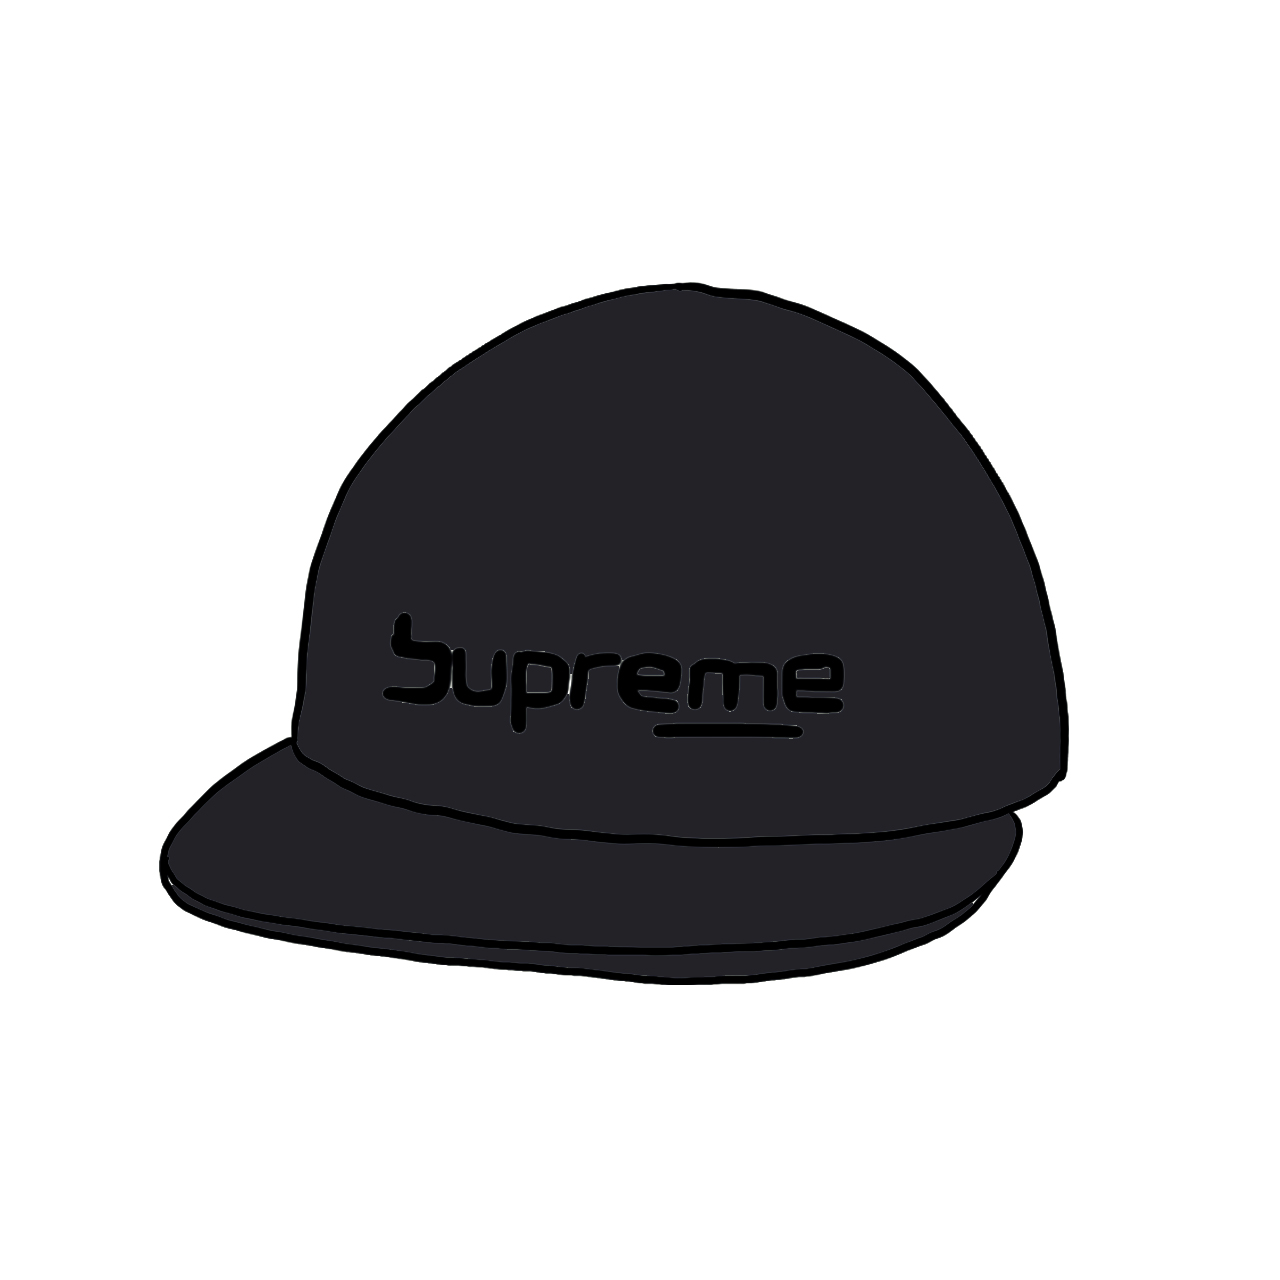 supremeSupreme Digital Logo 6-Panel